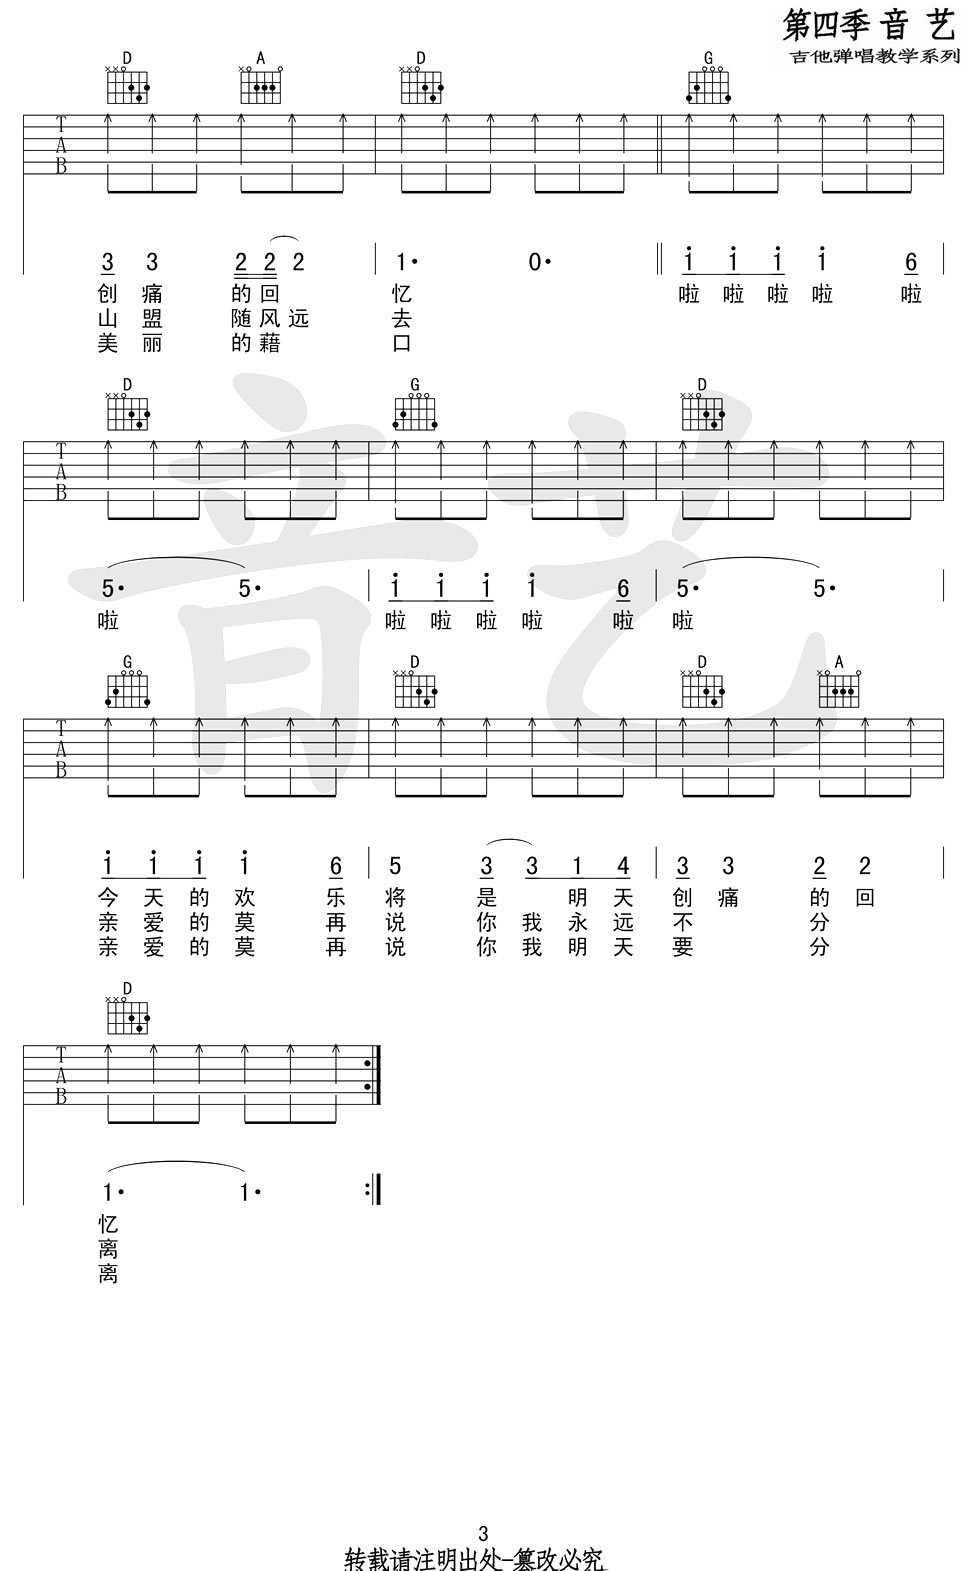 恋曲1980吉他谱-罗大佑-恋曲一九八零吉他谱1